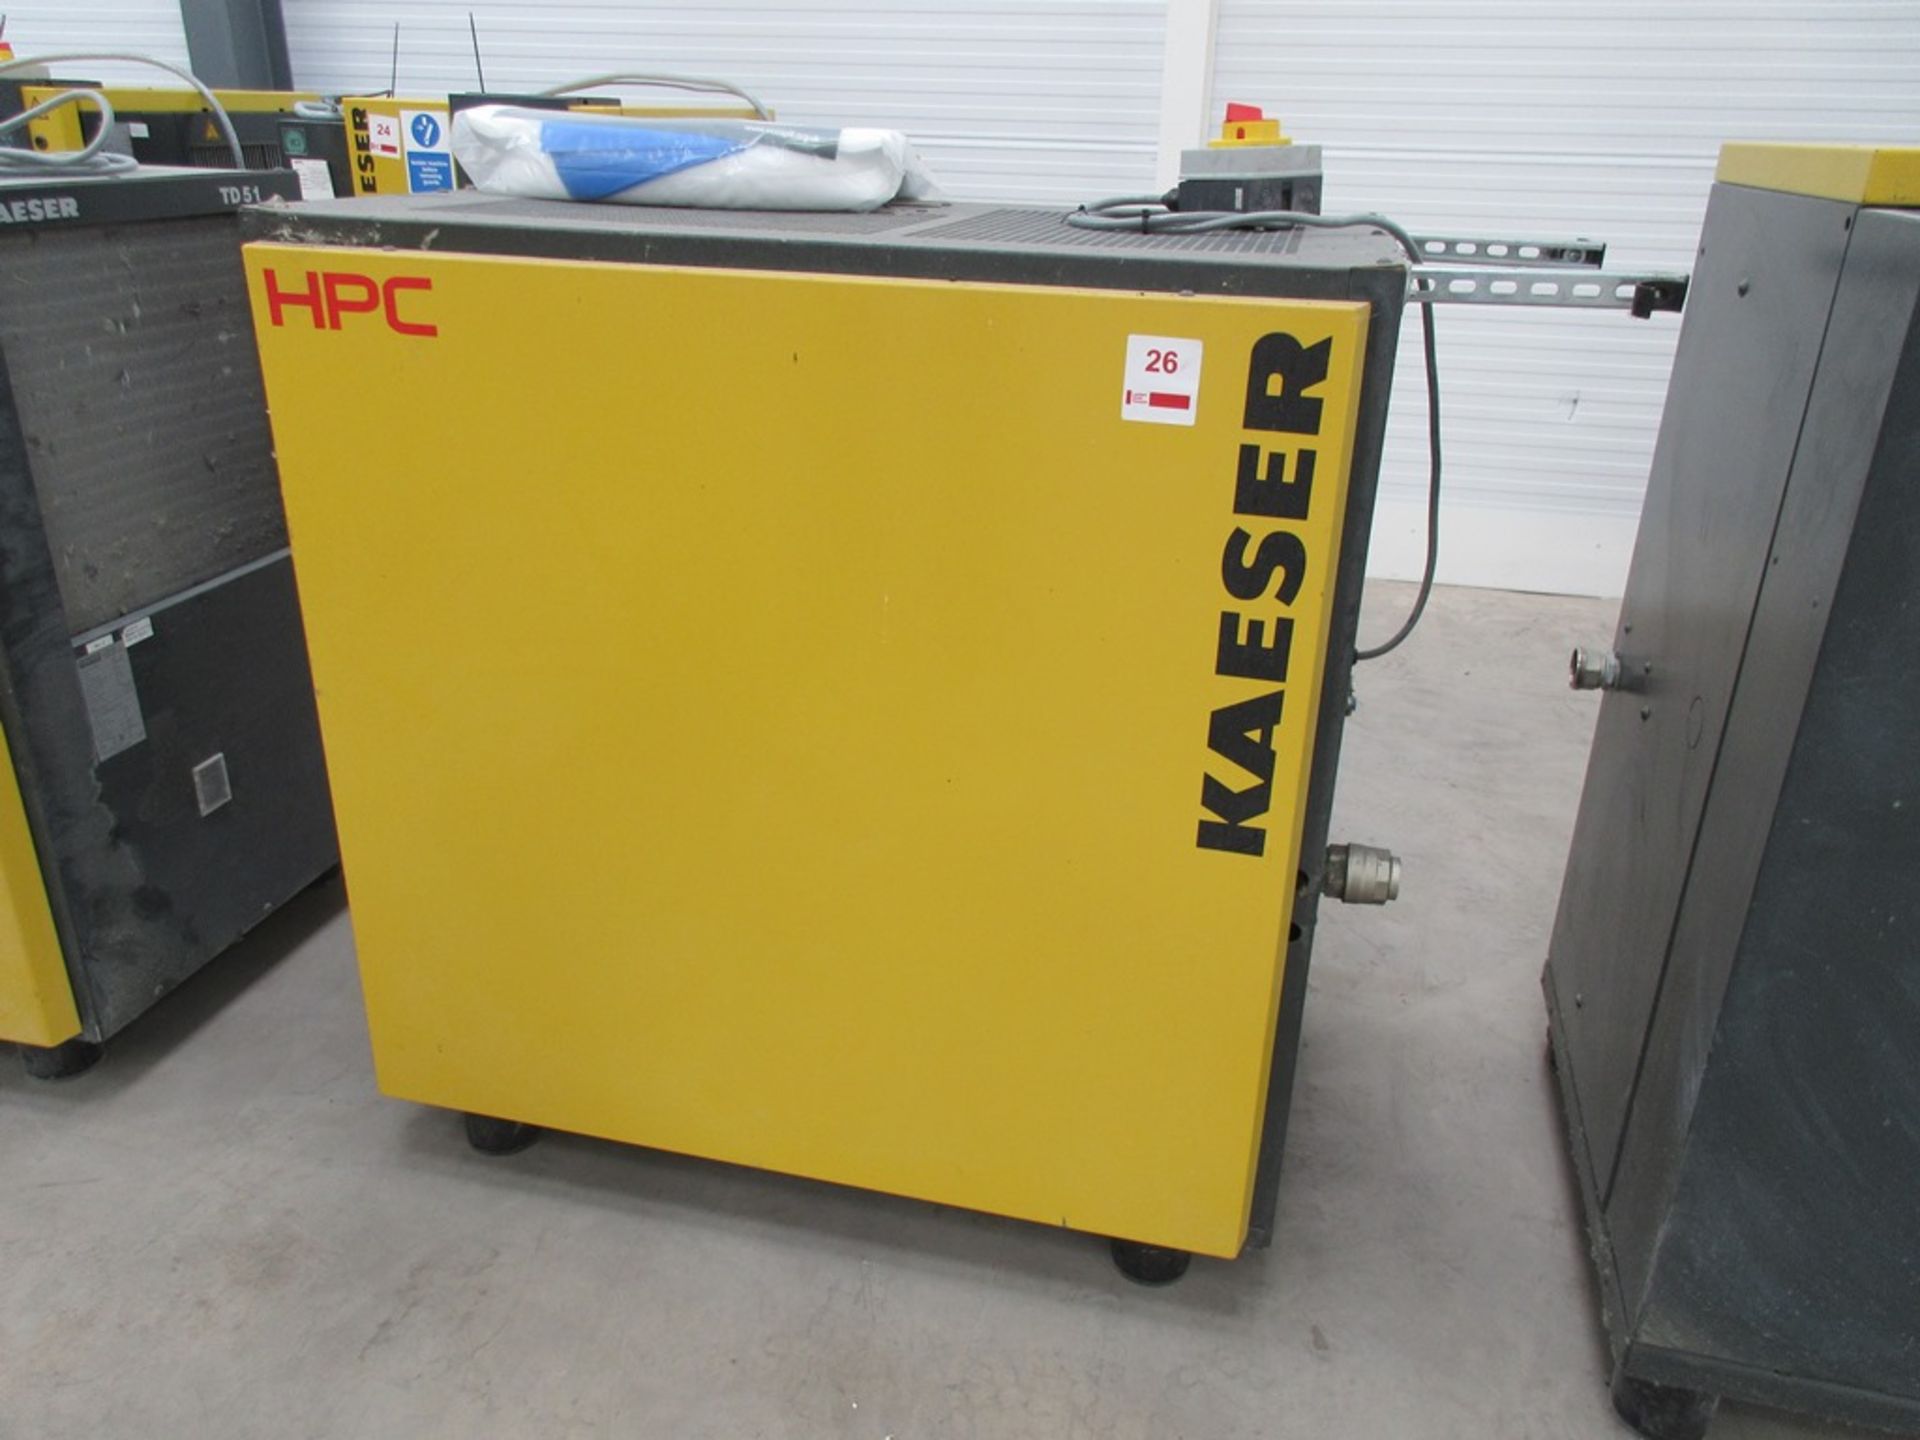 HPC Kaeser TD51 refrigeration dryer, serial no. 1061 (2016)